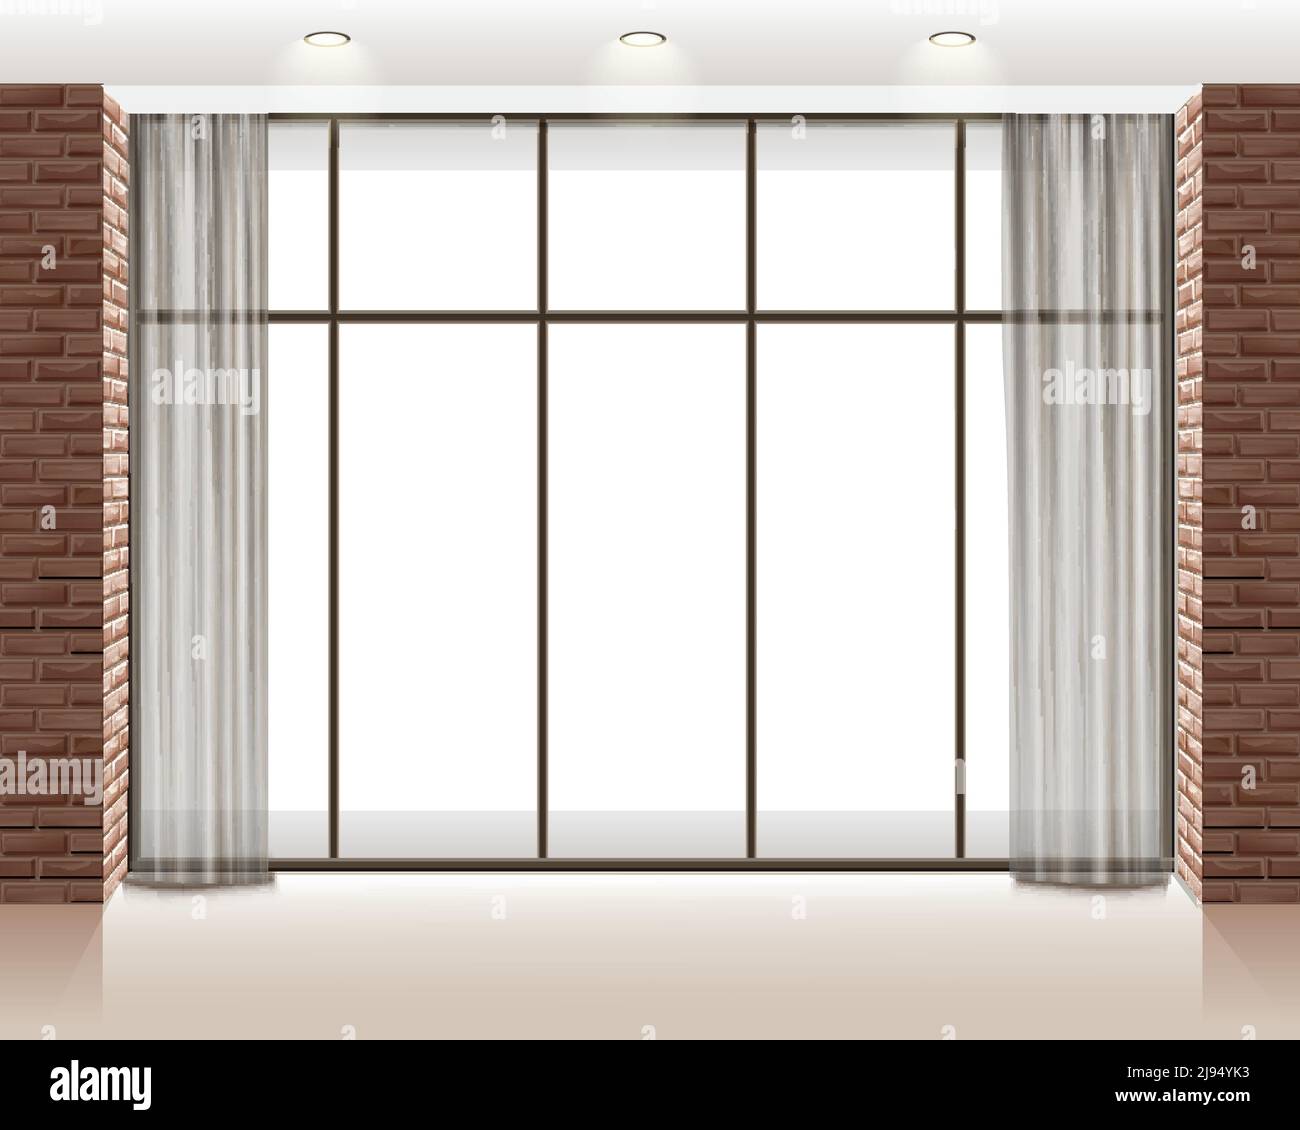 Vektor-Illustration von großen Fenster im leeren Loft-Raum mit Ziegelwand Stock Vektor